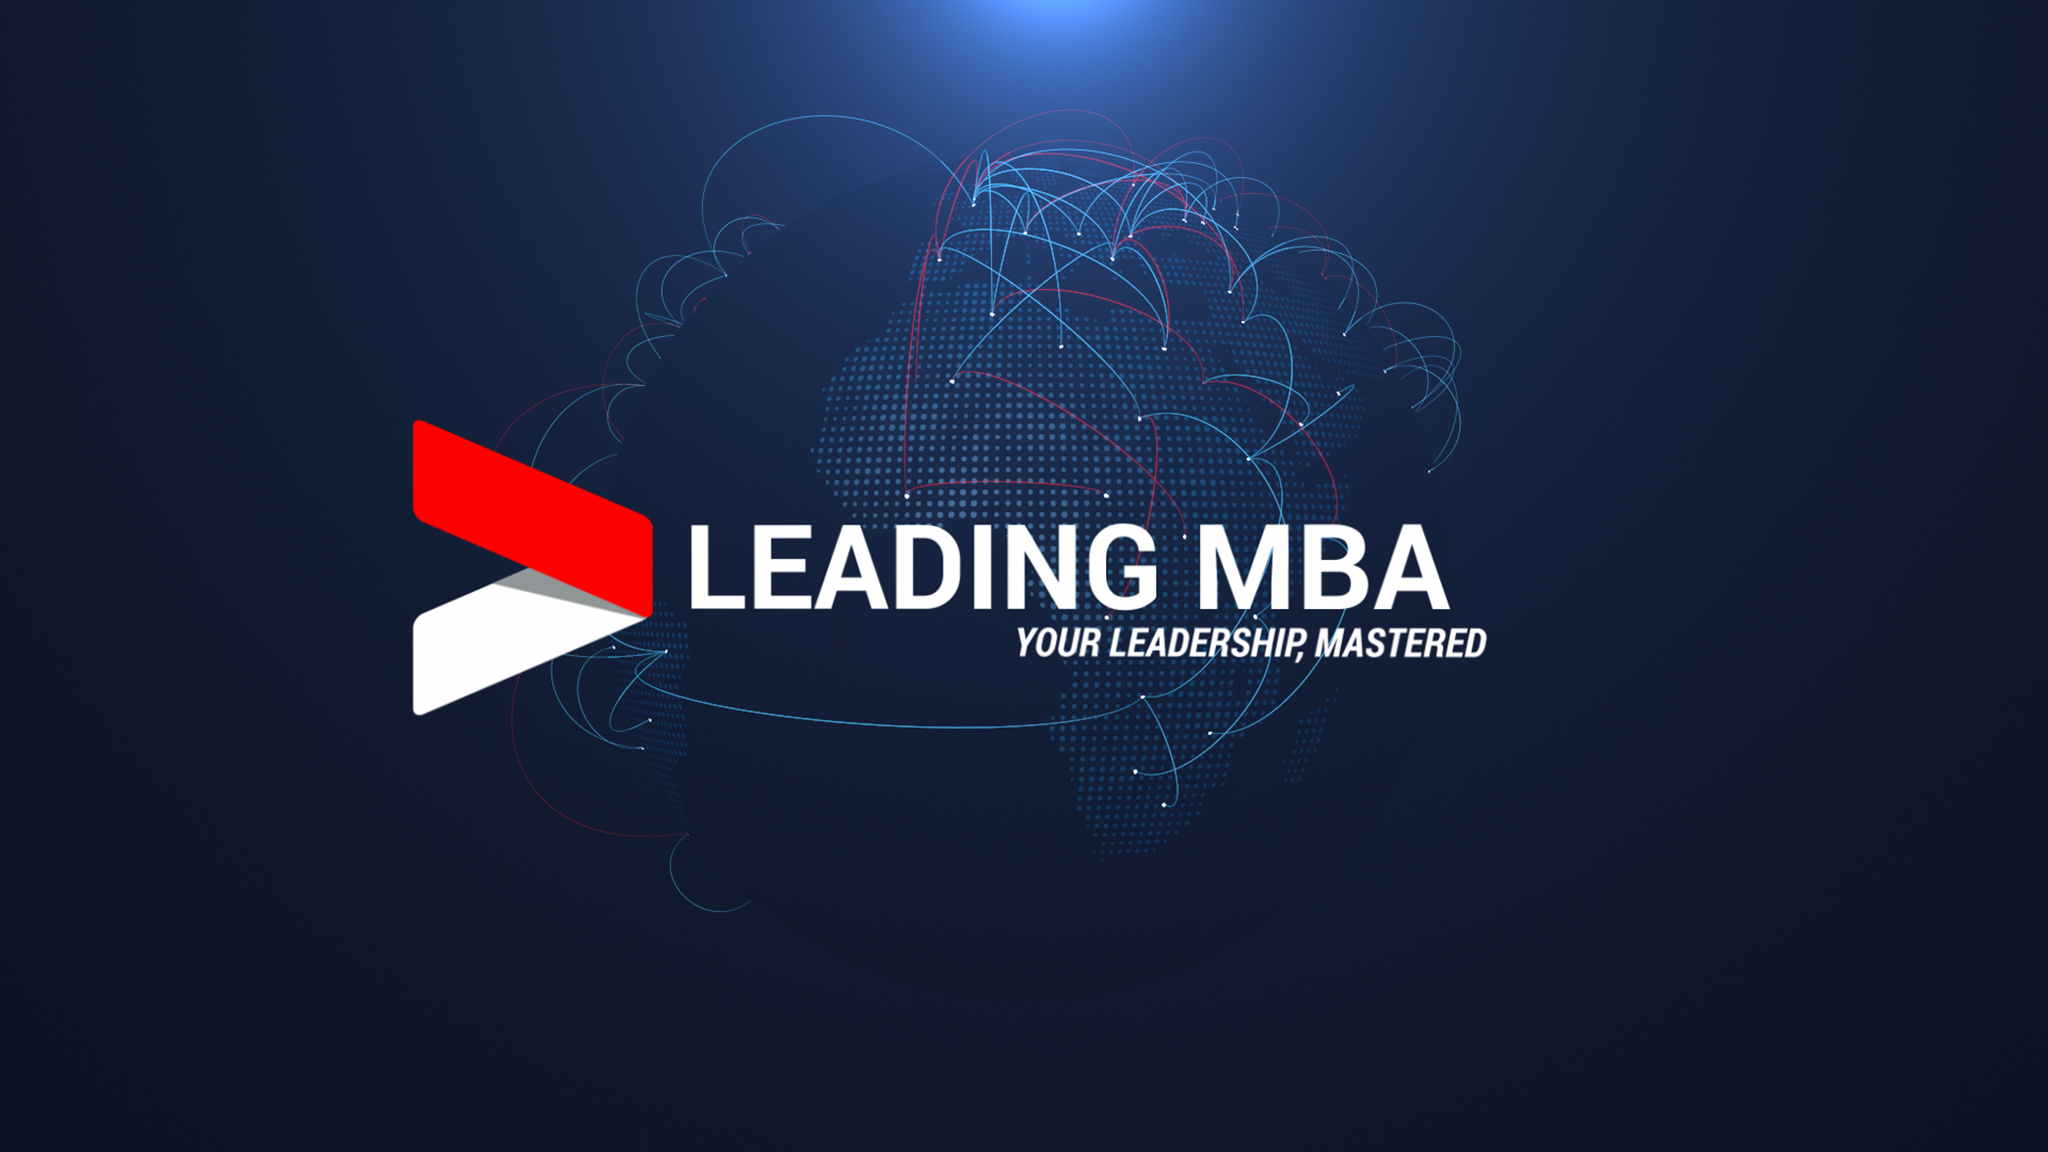 Leading MBA still